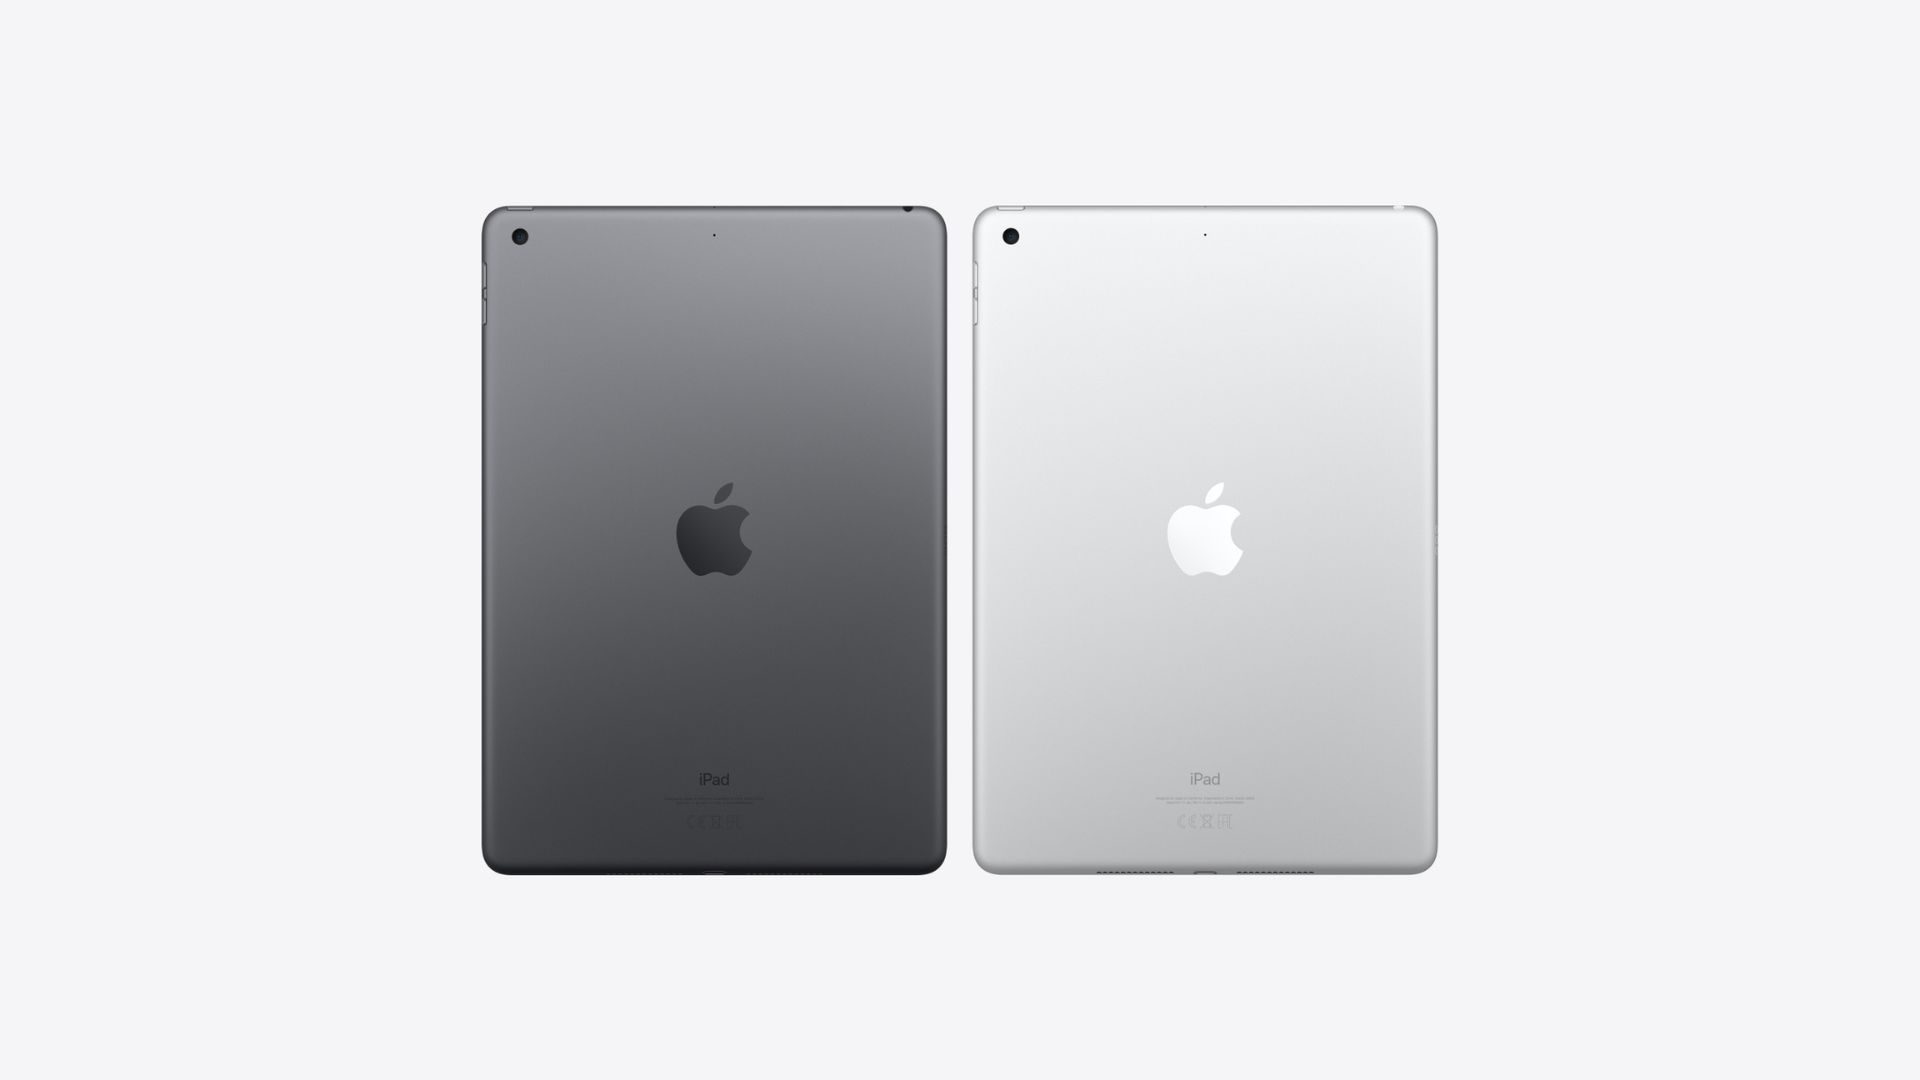 最高の iPad の 1 つである iPad 第 9 世代は、シルバーとブラックの 2 色で表示されます。 背面が見えます。中央に Apple ロゴがあり、左上に小さなカメラ穴があります。